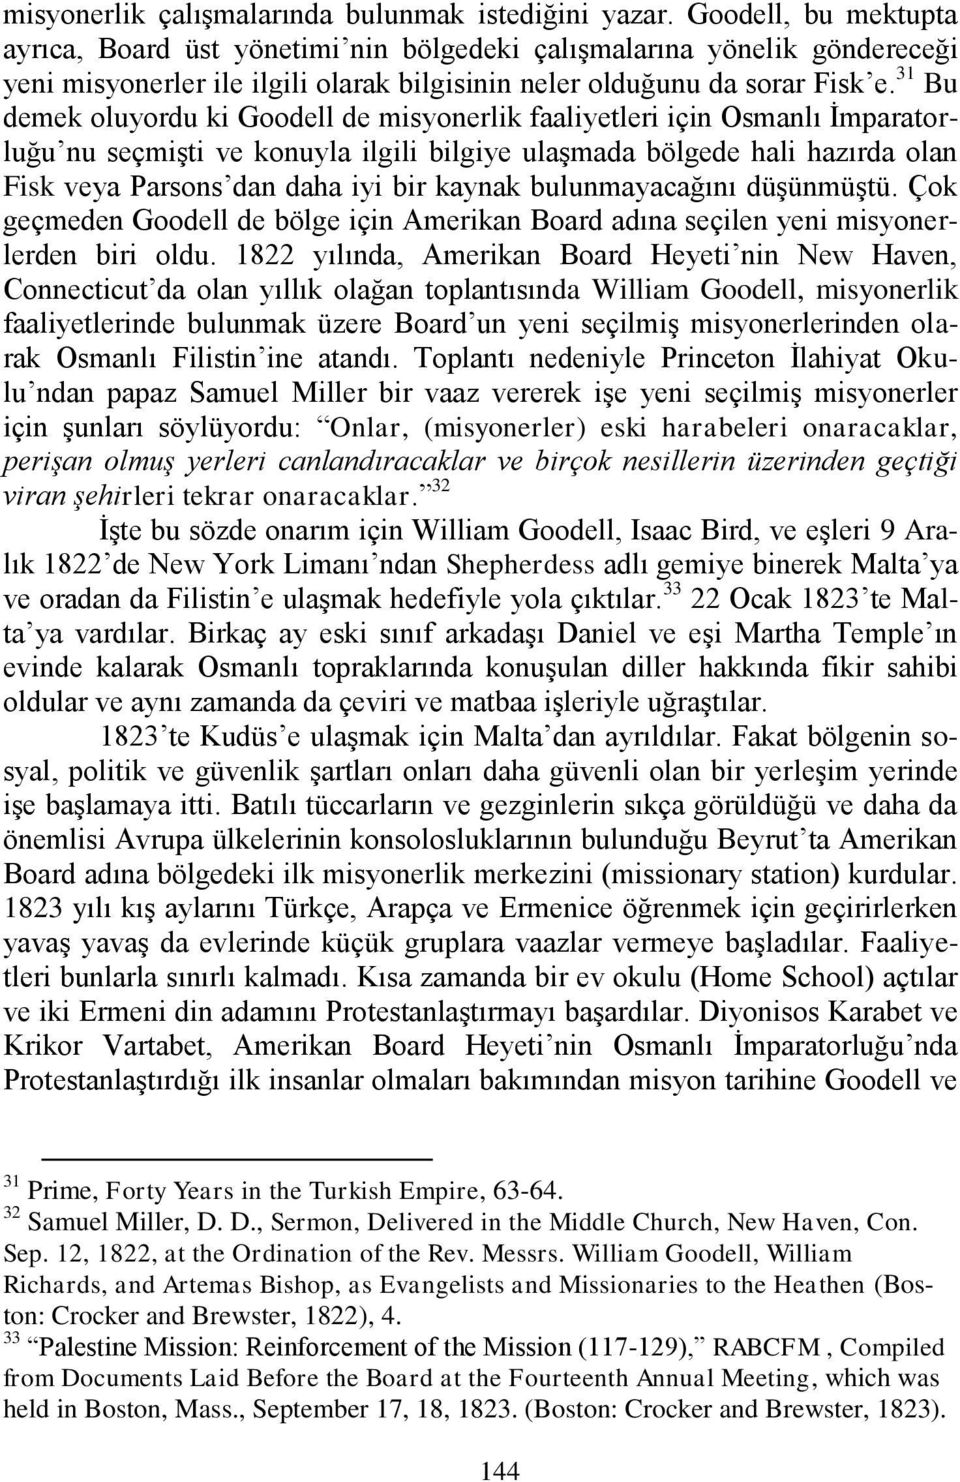 31 Bu demek oluyordu ki Goodell de misyonerlik faaliyetleri için Osmanlı İmparatorluğu nu seçmişti ve konuyla ilgili bilgiye ulaşmada bölgede hali hazırda olan Fisk veya Parsons dan daha iyi bir